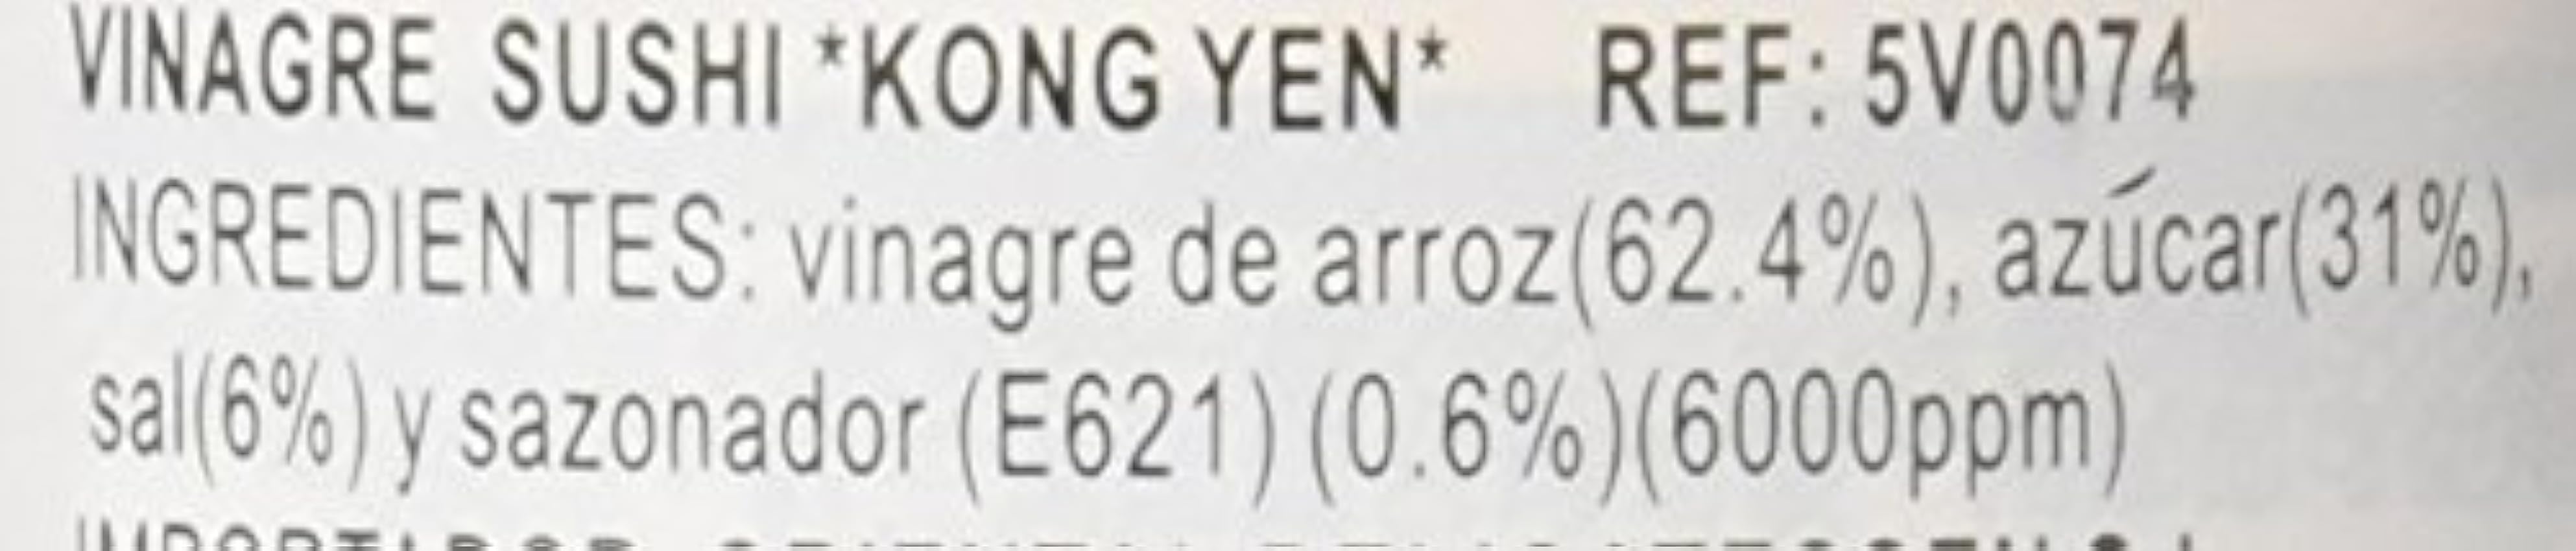 Kong Yen Vinagre de Sushi - 300 ml mrrynFLj